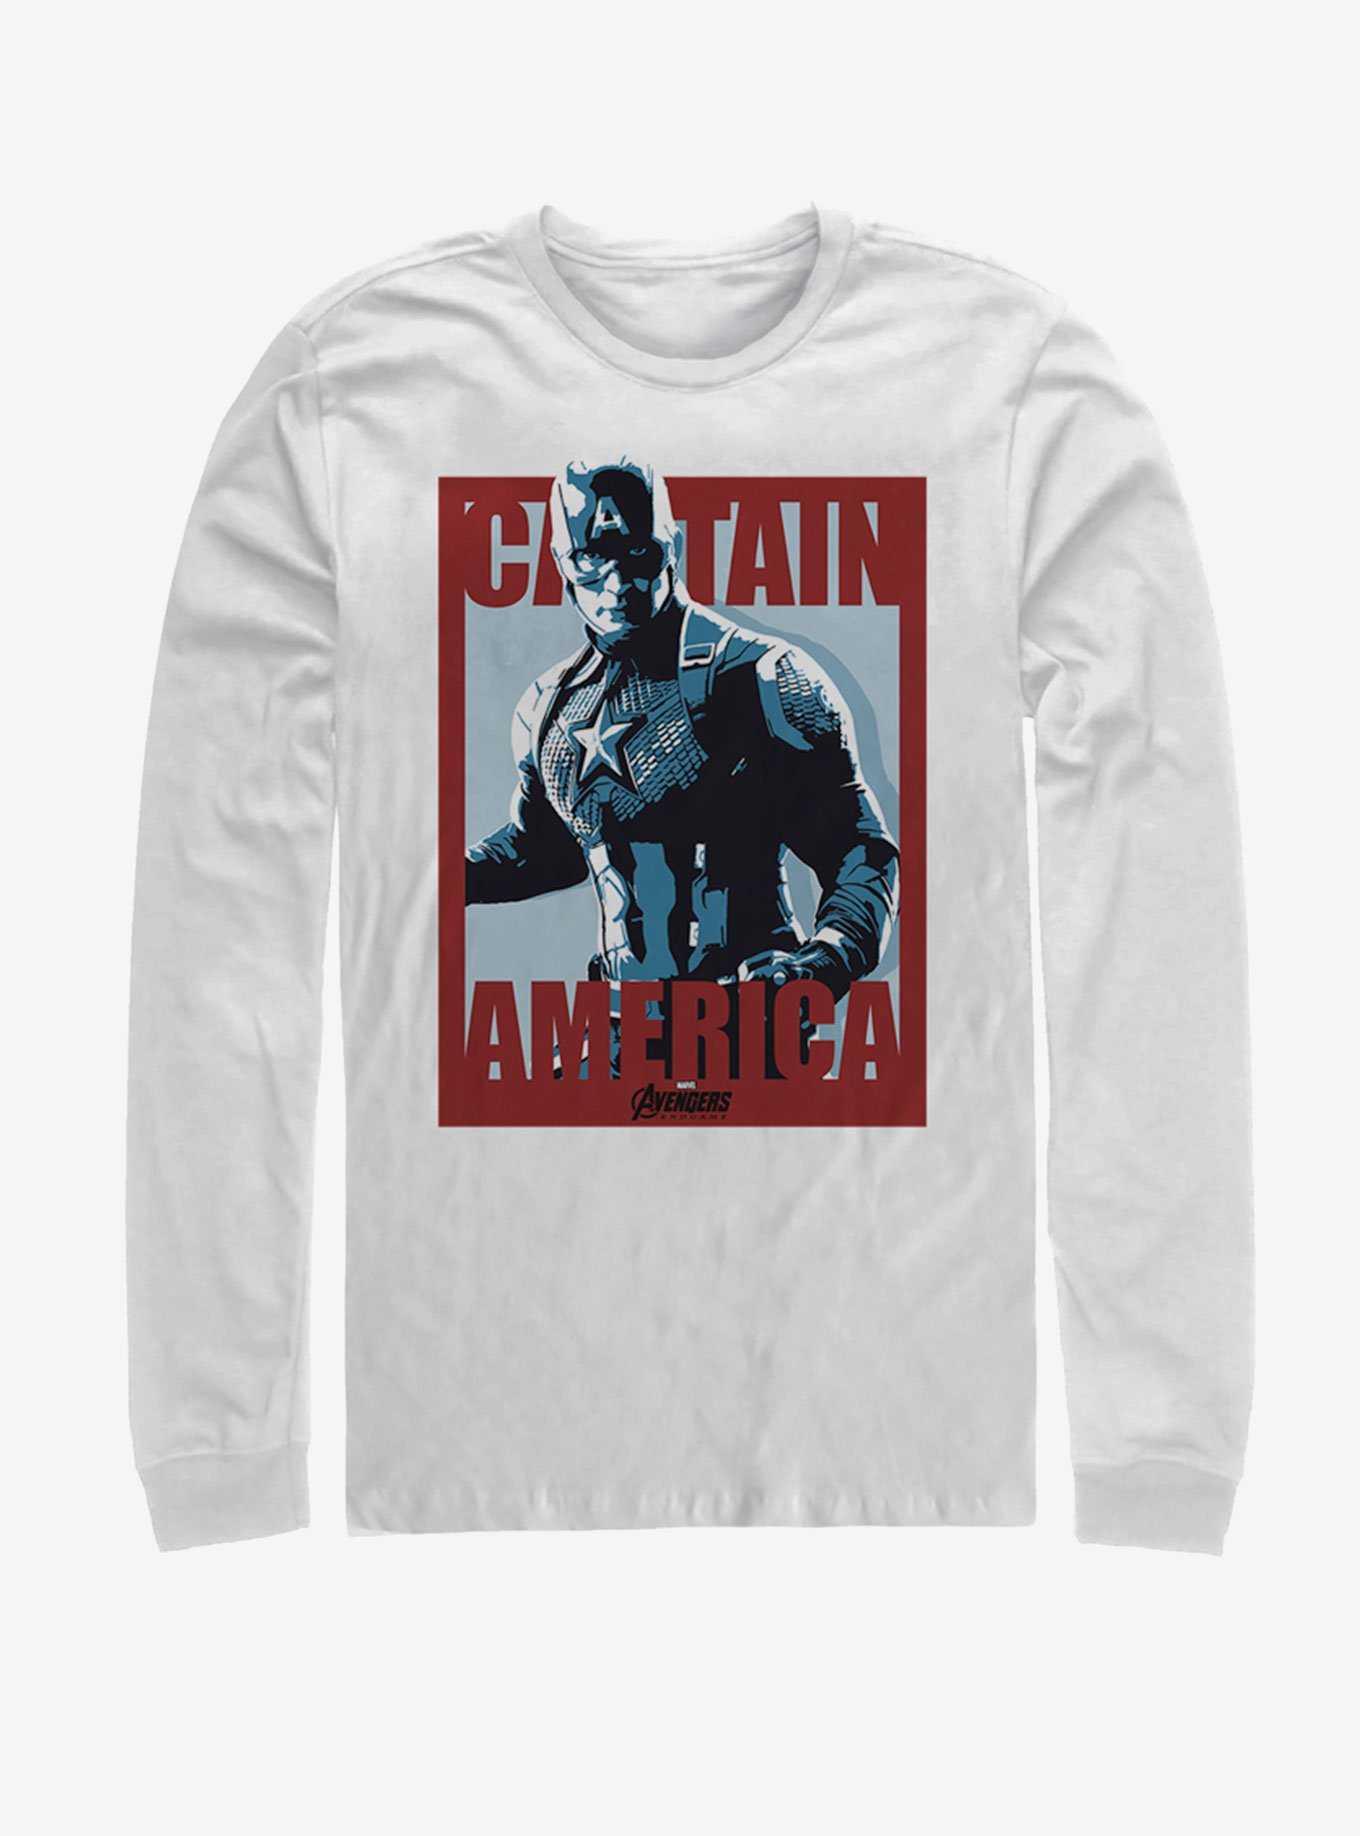 Marvel Avengers: Endgame Captain America Poster Long-Sleeve T-Shirt, , hi-res